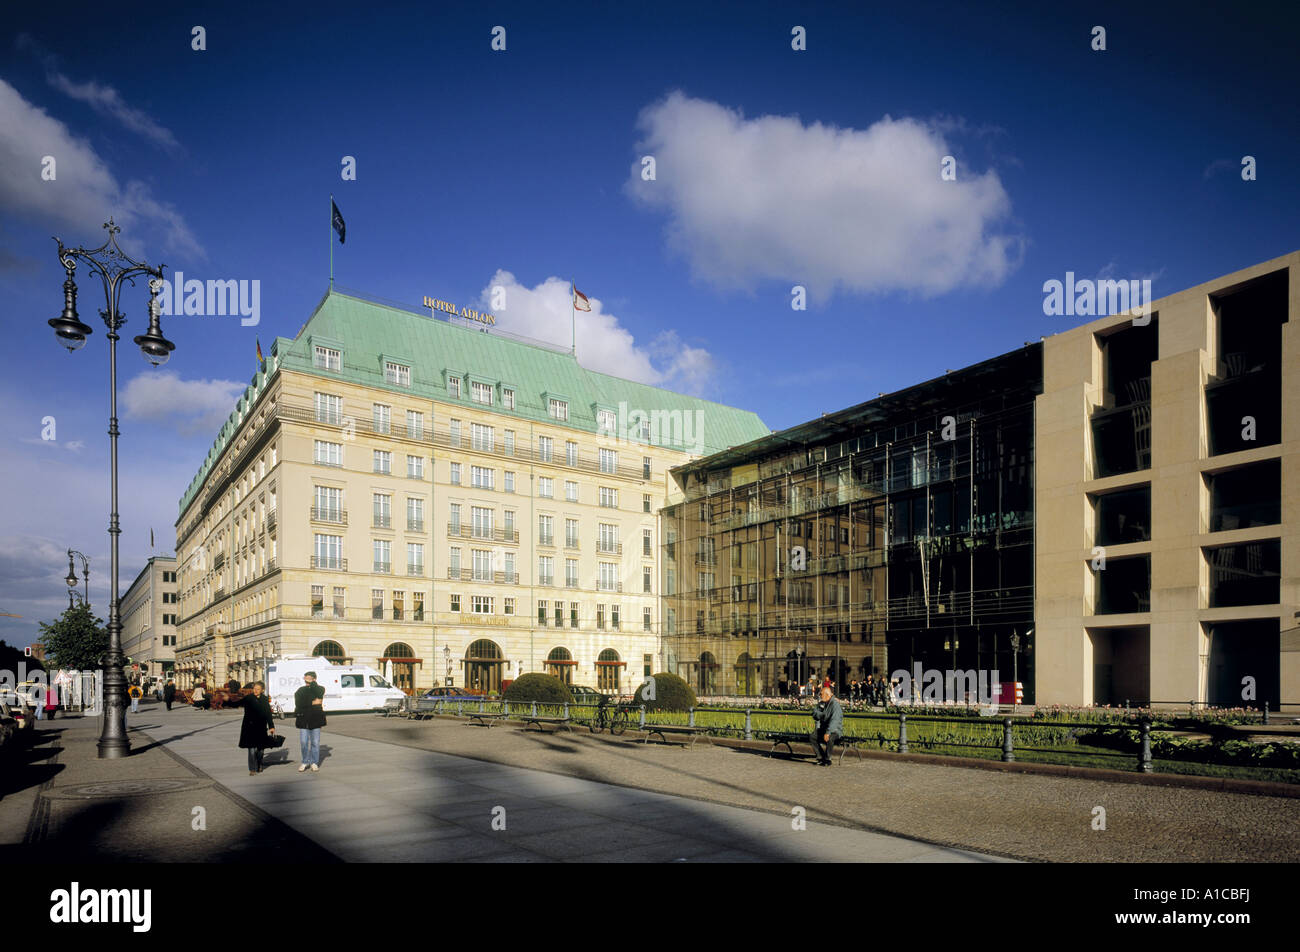 Hotel Adlon y Acadamy de las Artes, el boulevard Unter den Linden, Alemania, Pariser Platz, Berlín Foto de stock